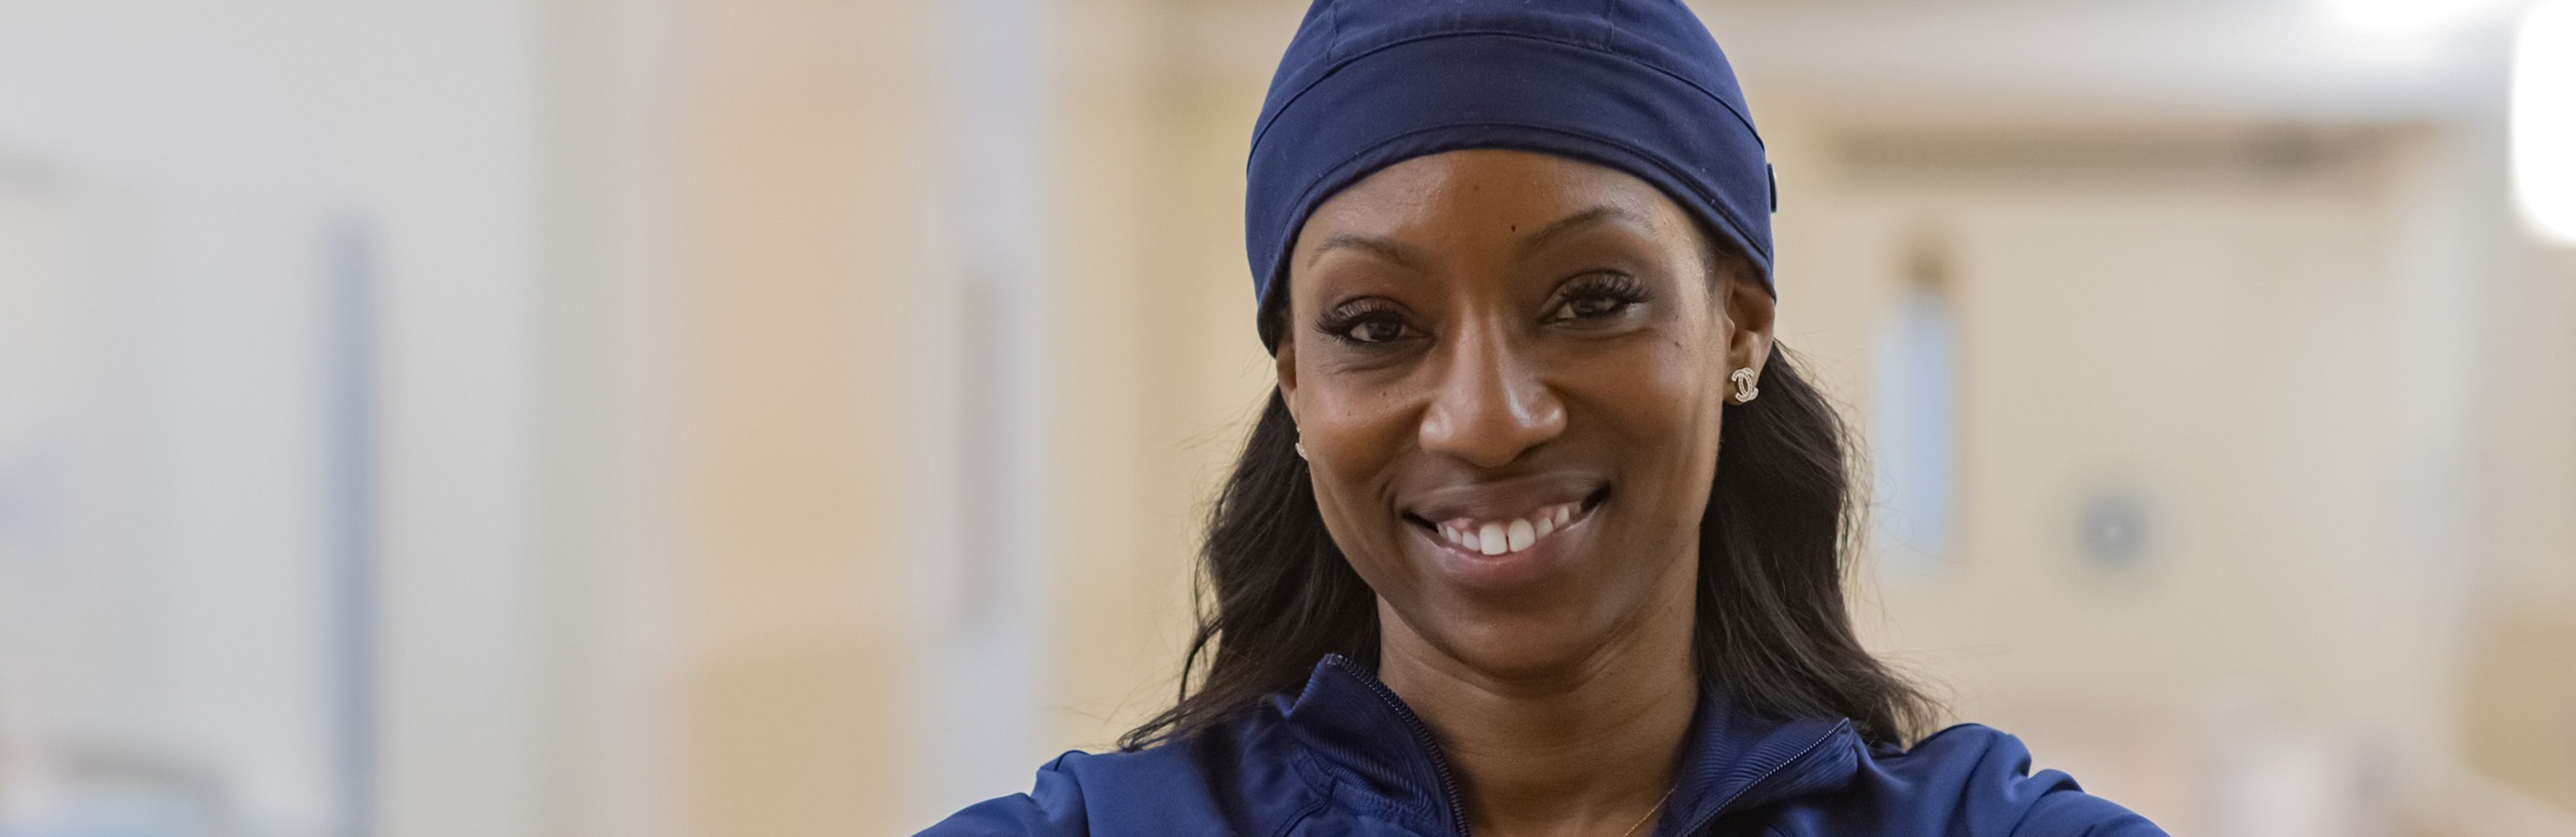 Foto de una enfermera sonriendo con la cabeza cubierta